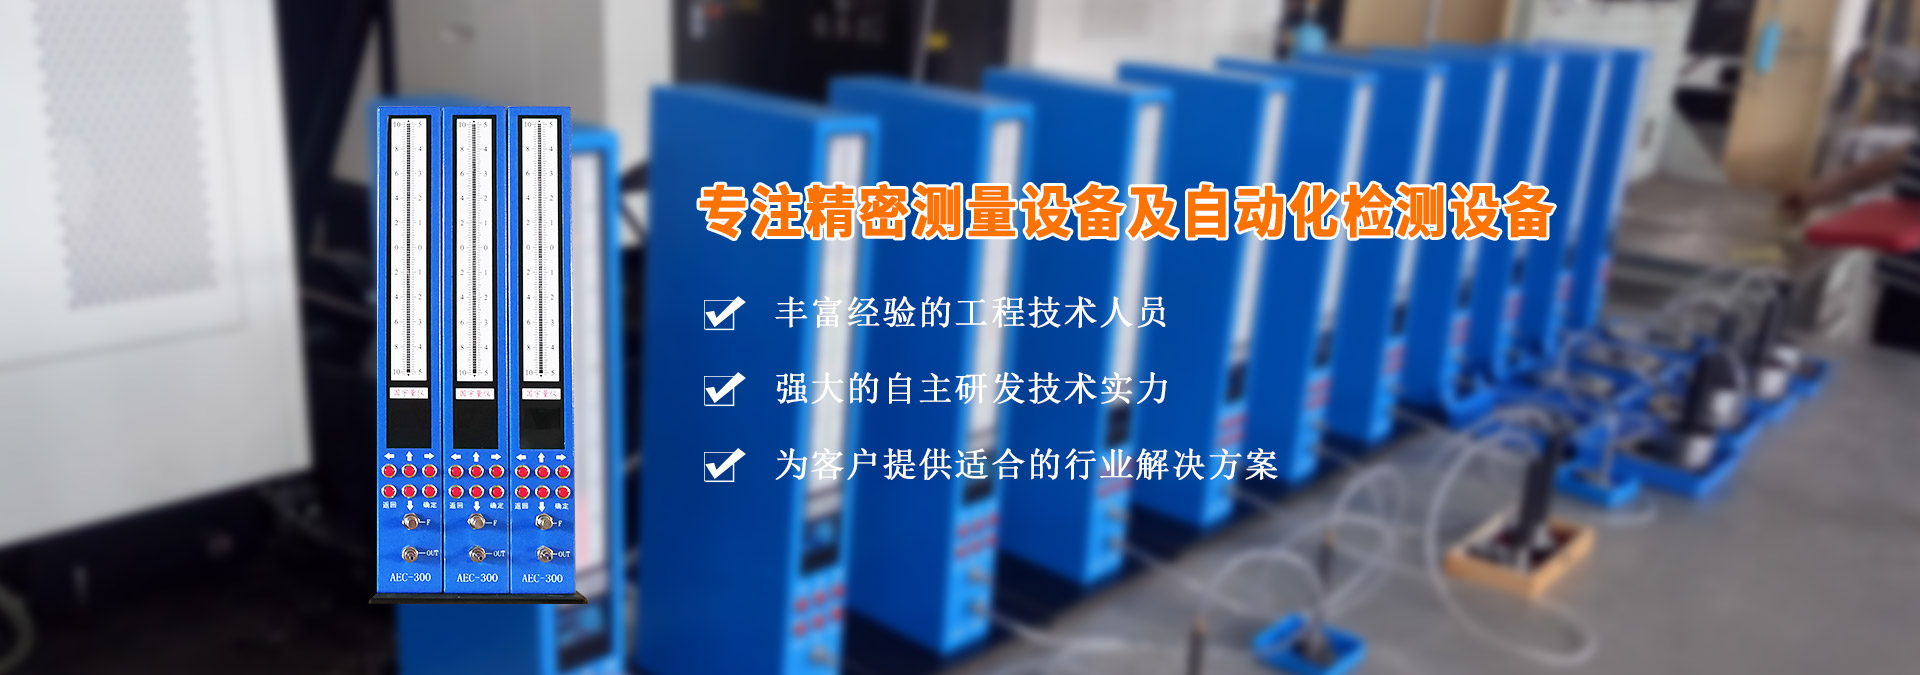 AEC-300中文屏顯電子柱量儀 氣動量儀